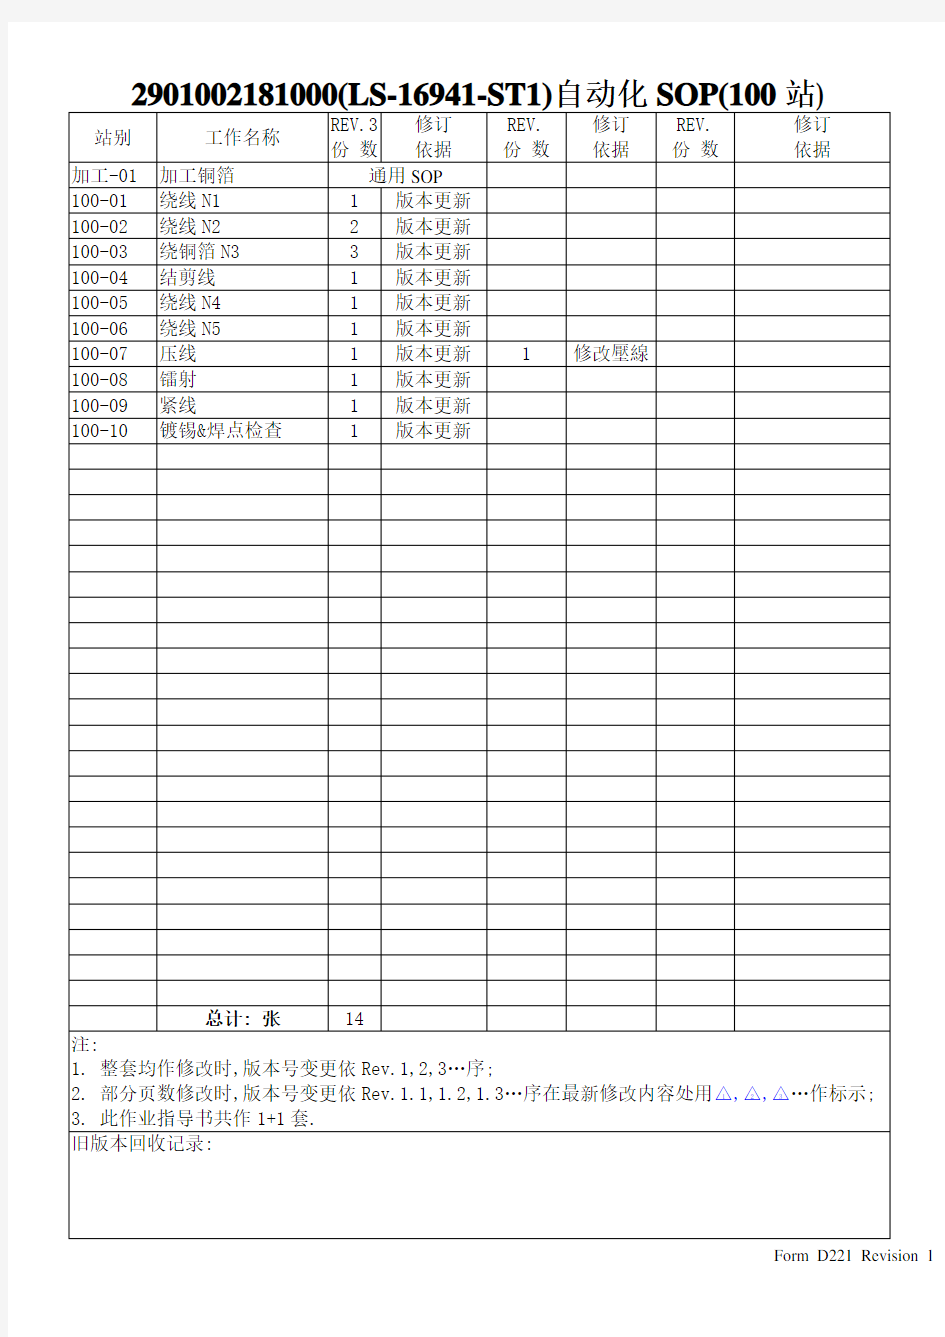 作业指导书(LS-16941-ST1)自动化SOP)